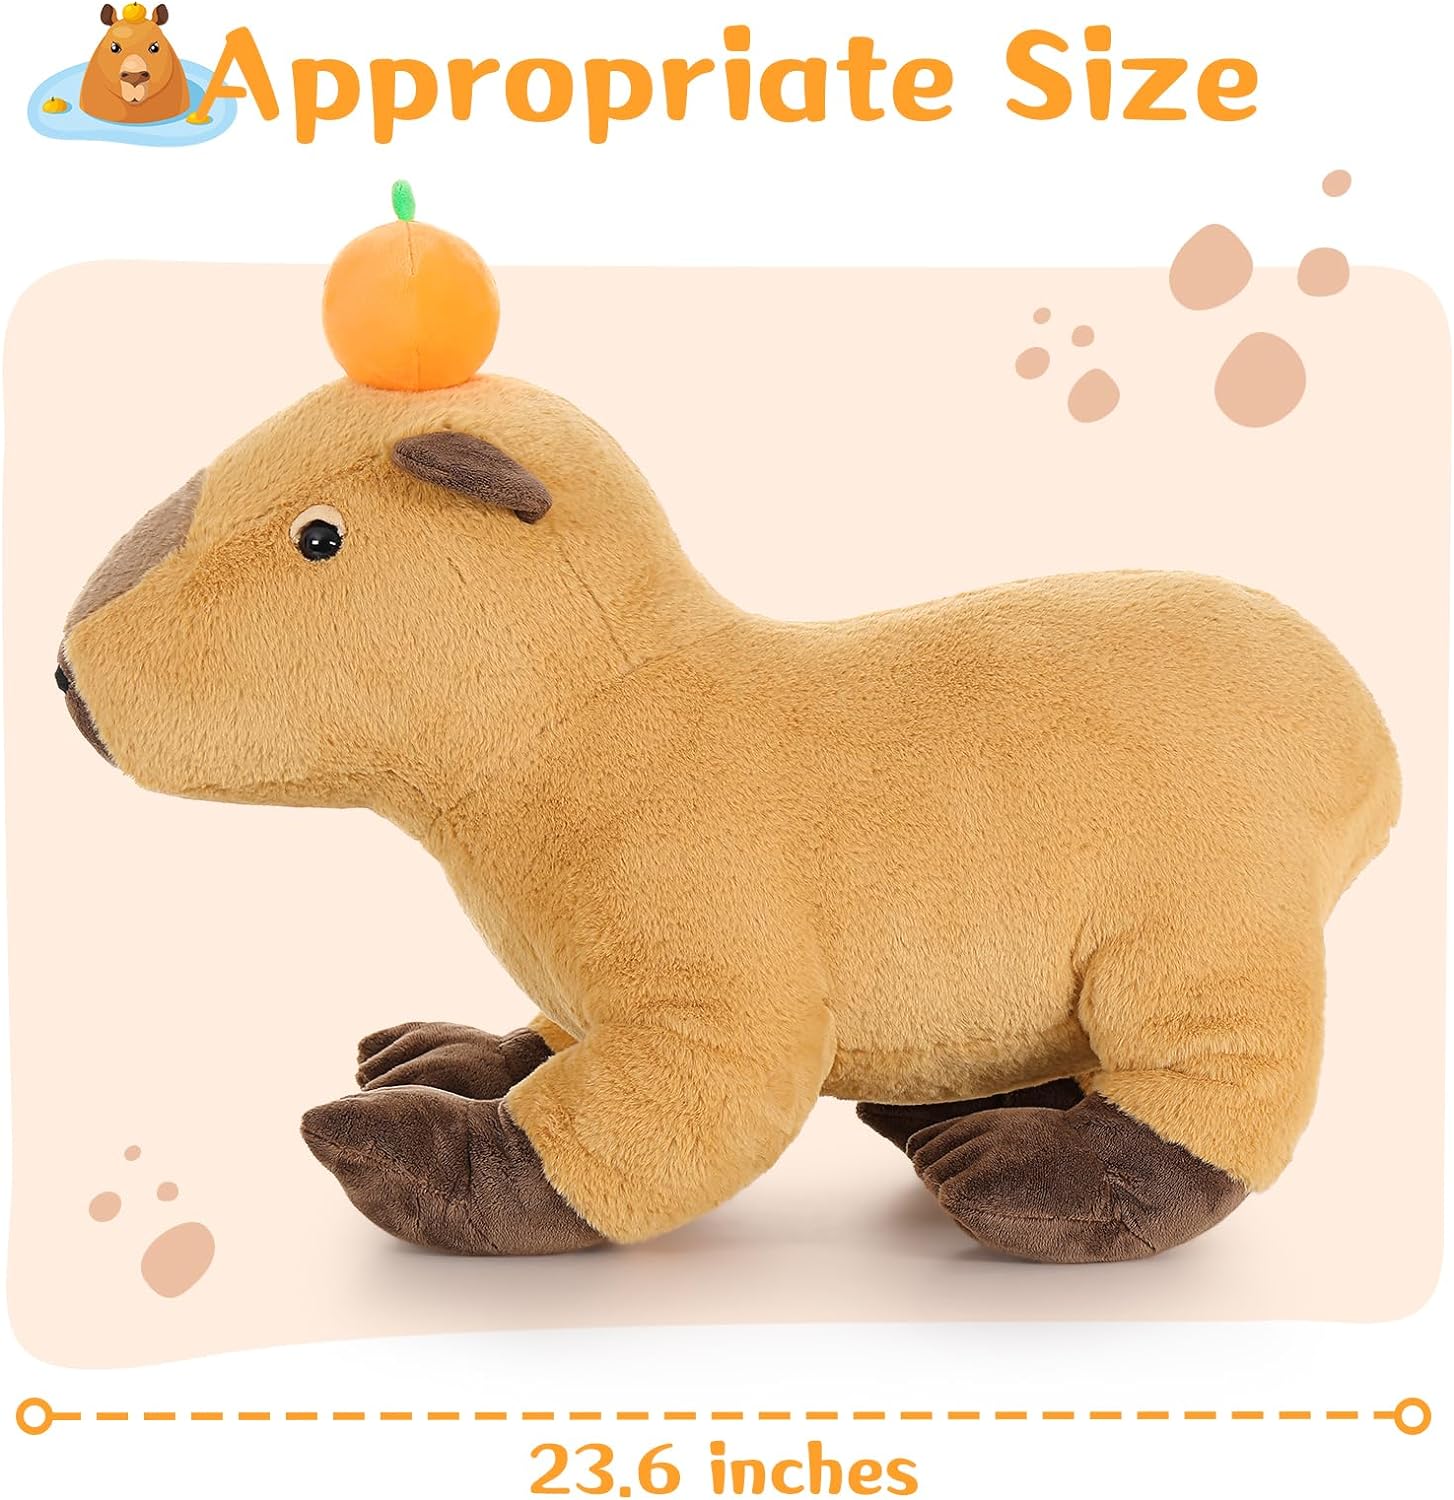 Capybara-Plüschtier, Hellbraun, 23,6 Zoll